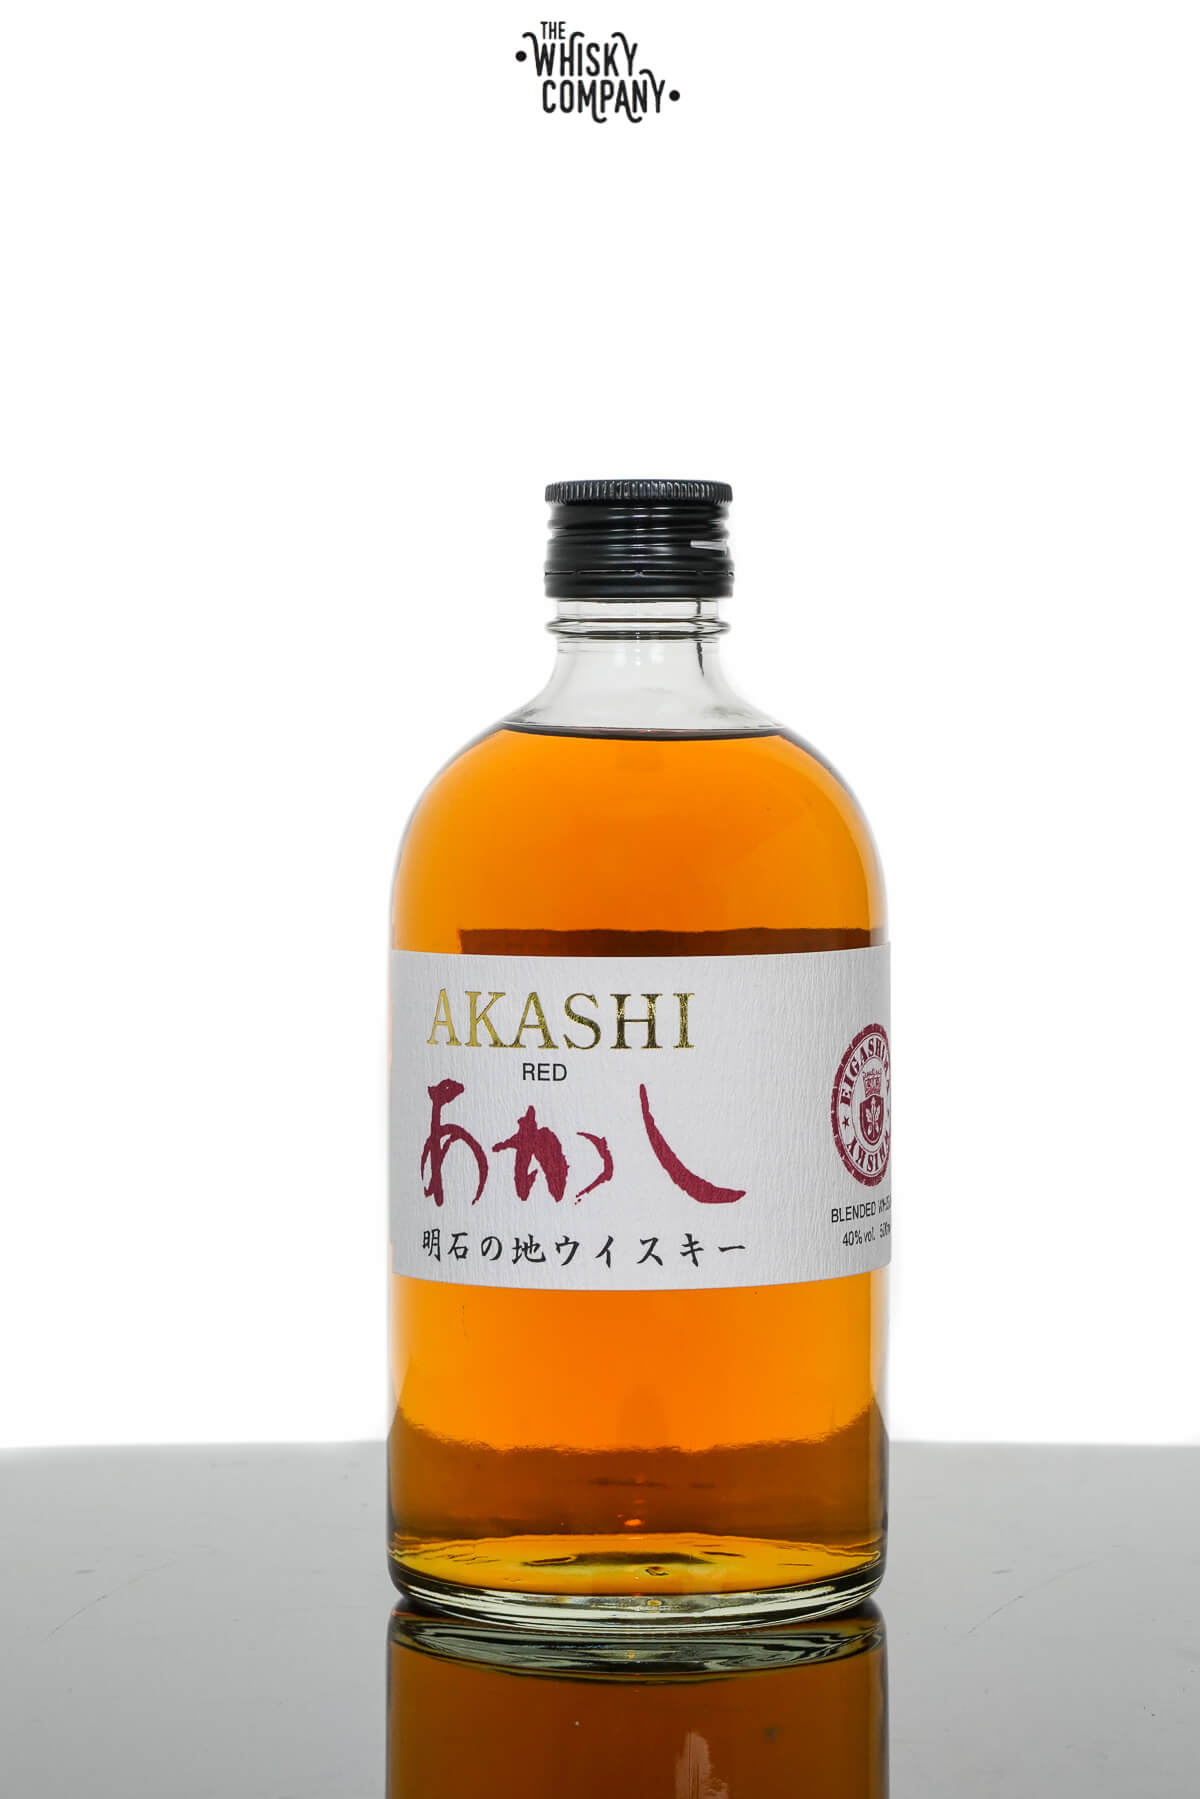 Akashi Red Japanese Blended Whisky